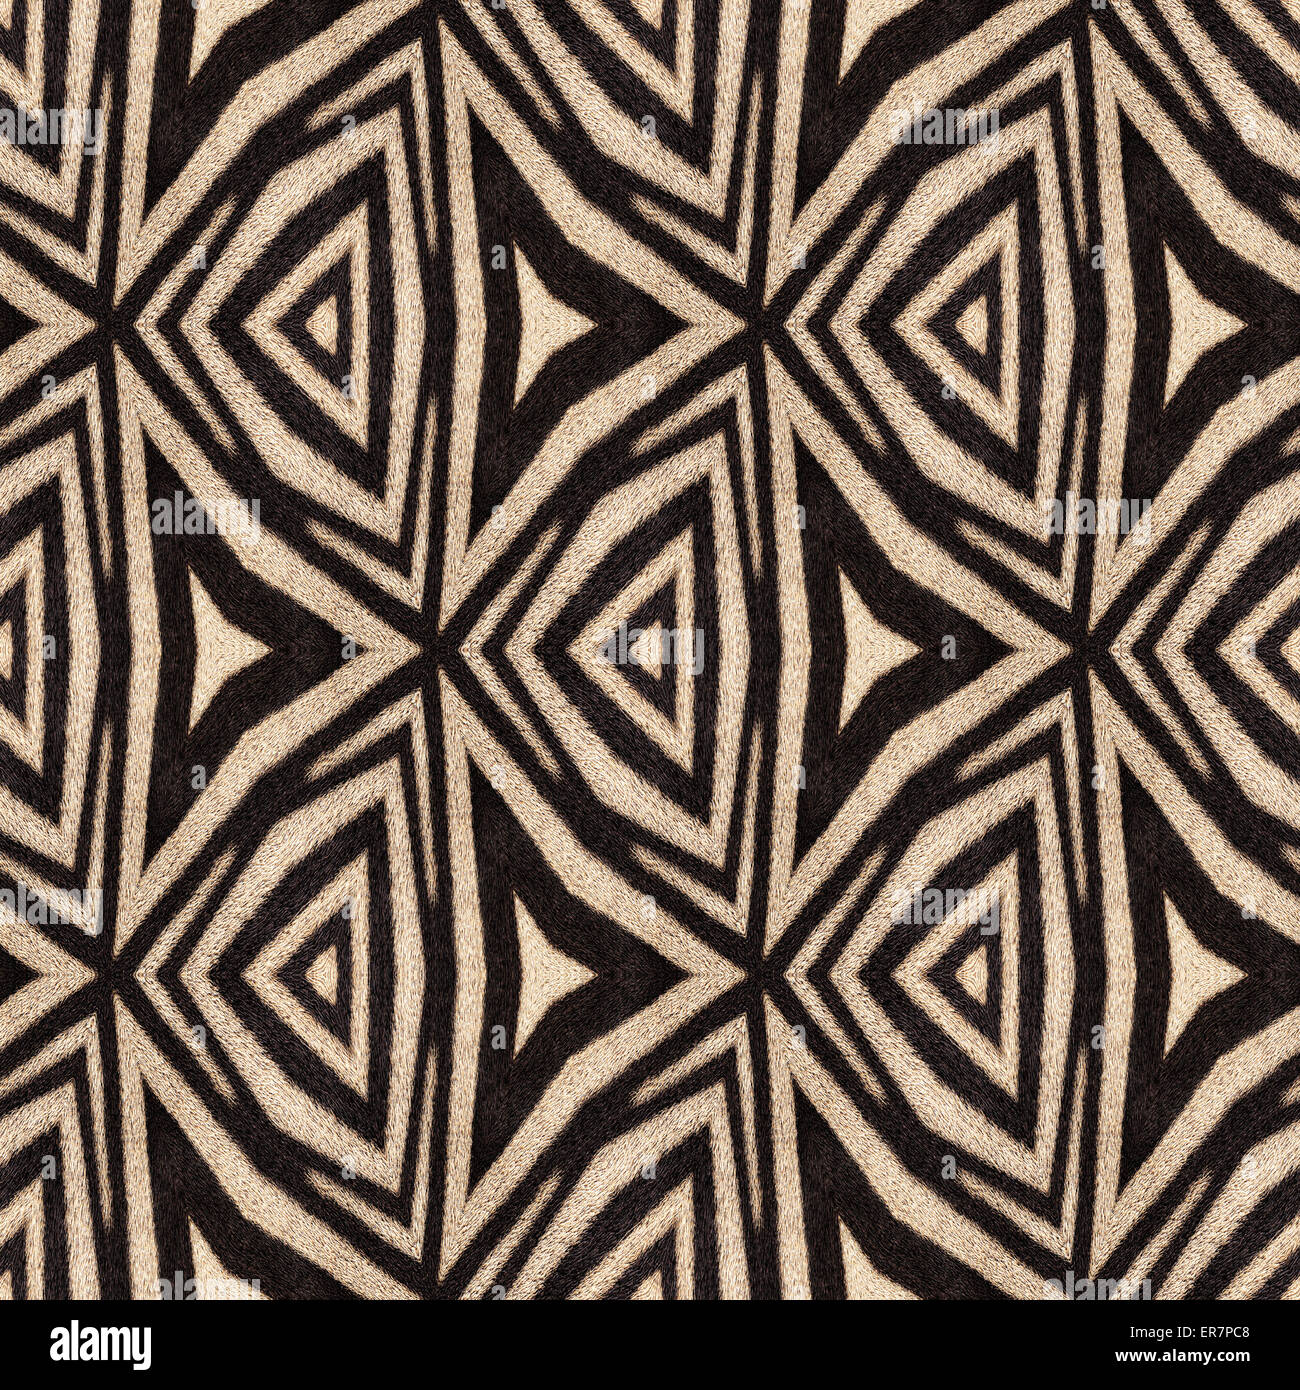 Zusammenfassung Hintergrund der Zebrastreifen. Schönes Muster von Mutter Natur gemacht. Stockfoto